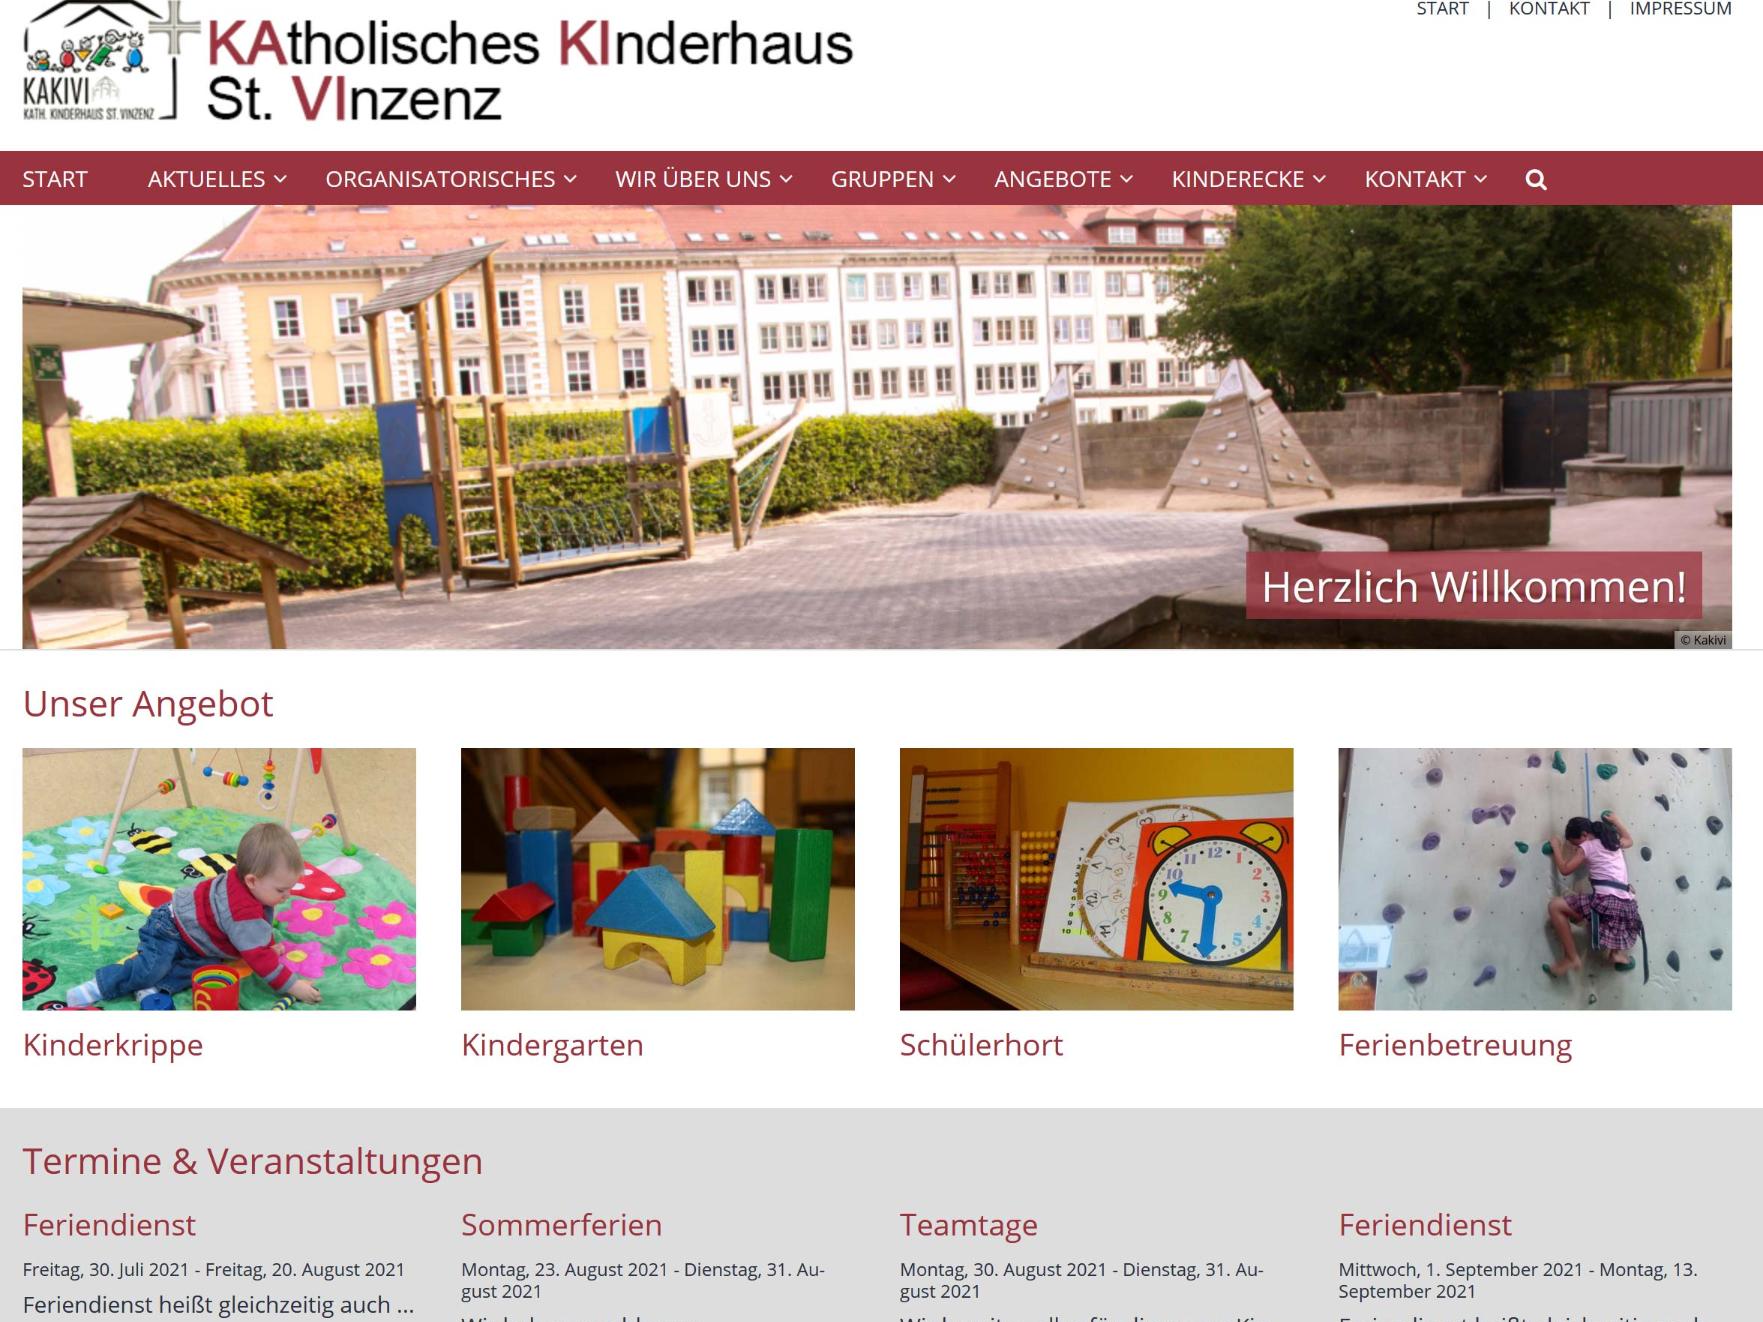 Shot der Startseite des Kath. Kinderhauses St. Vinzenz Bayreuth